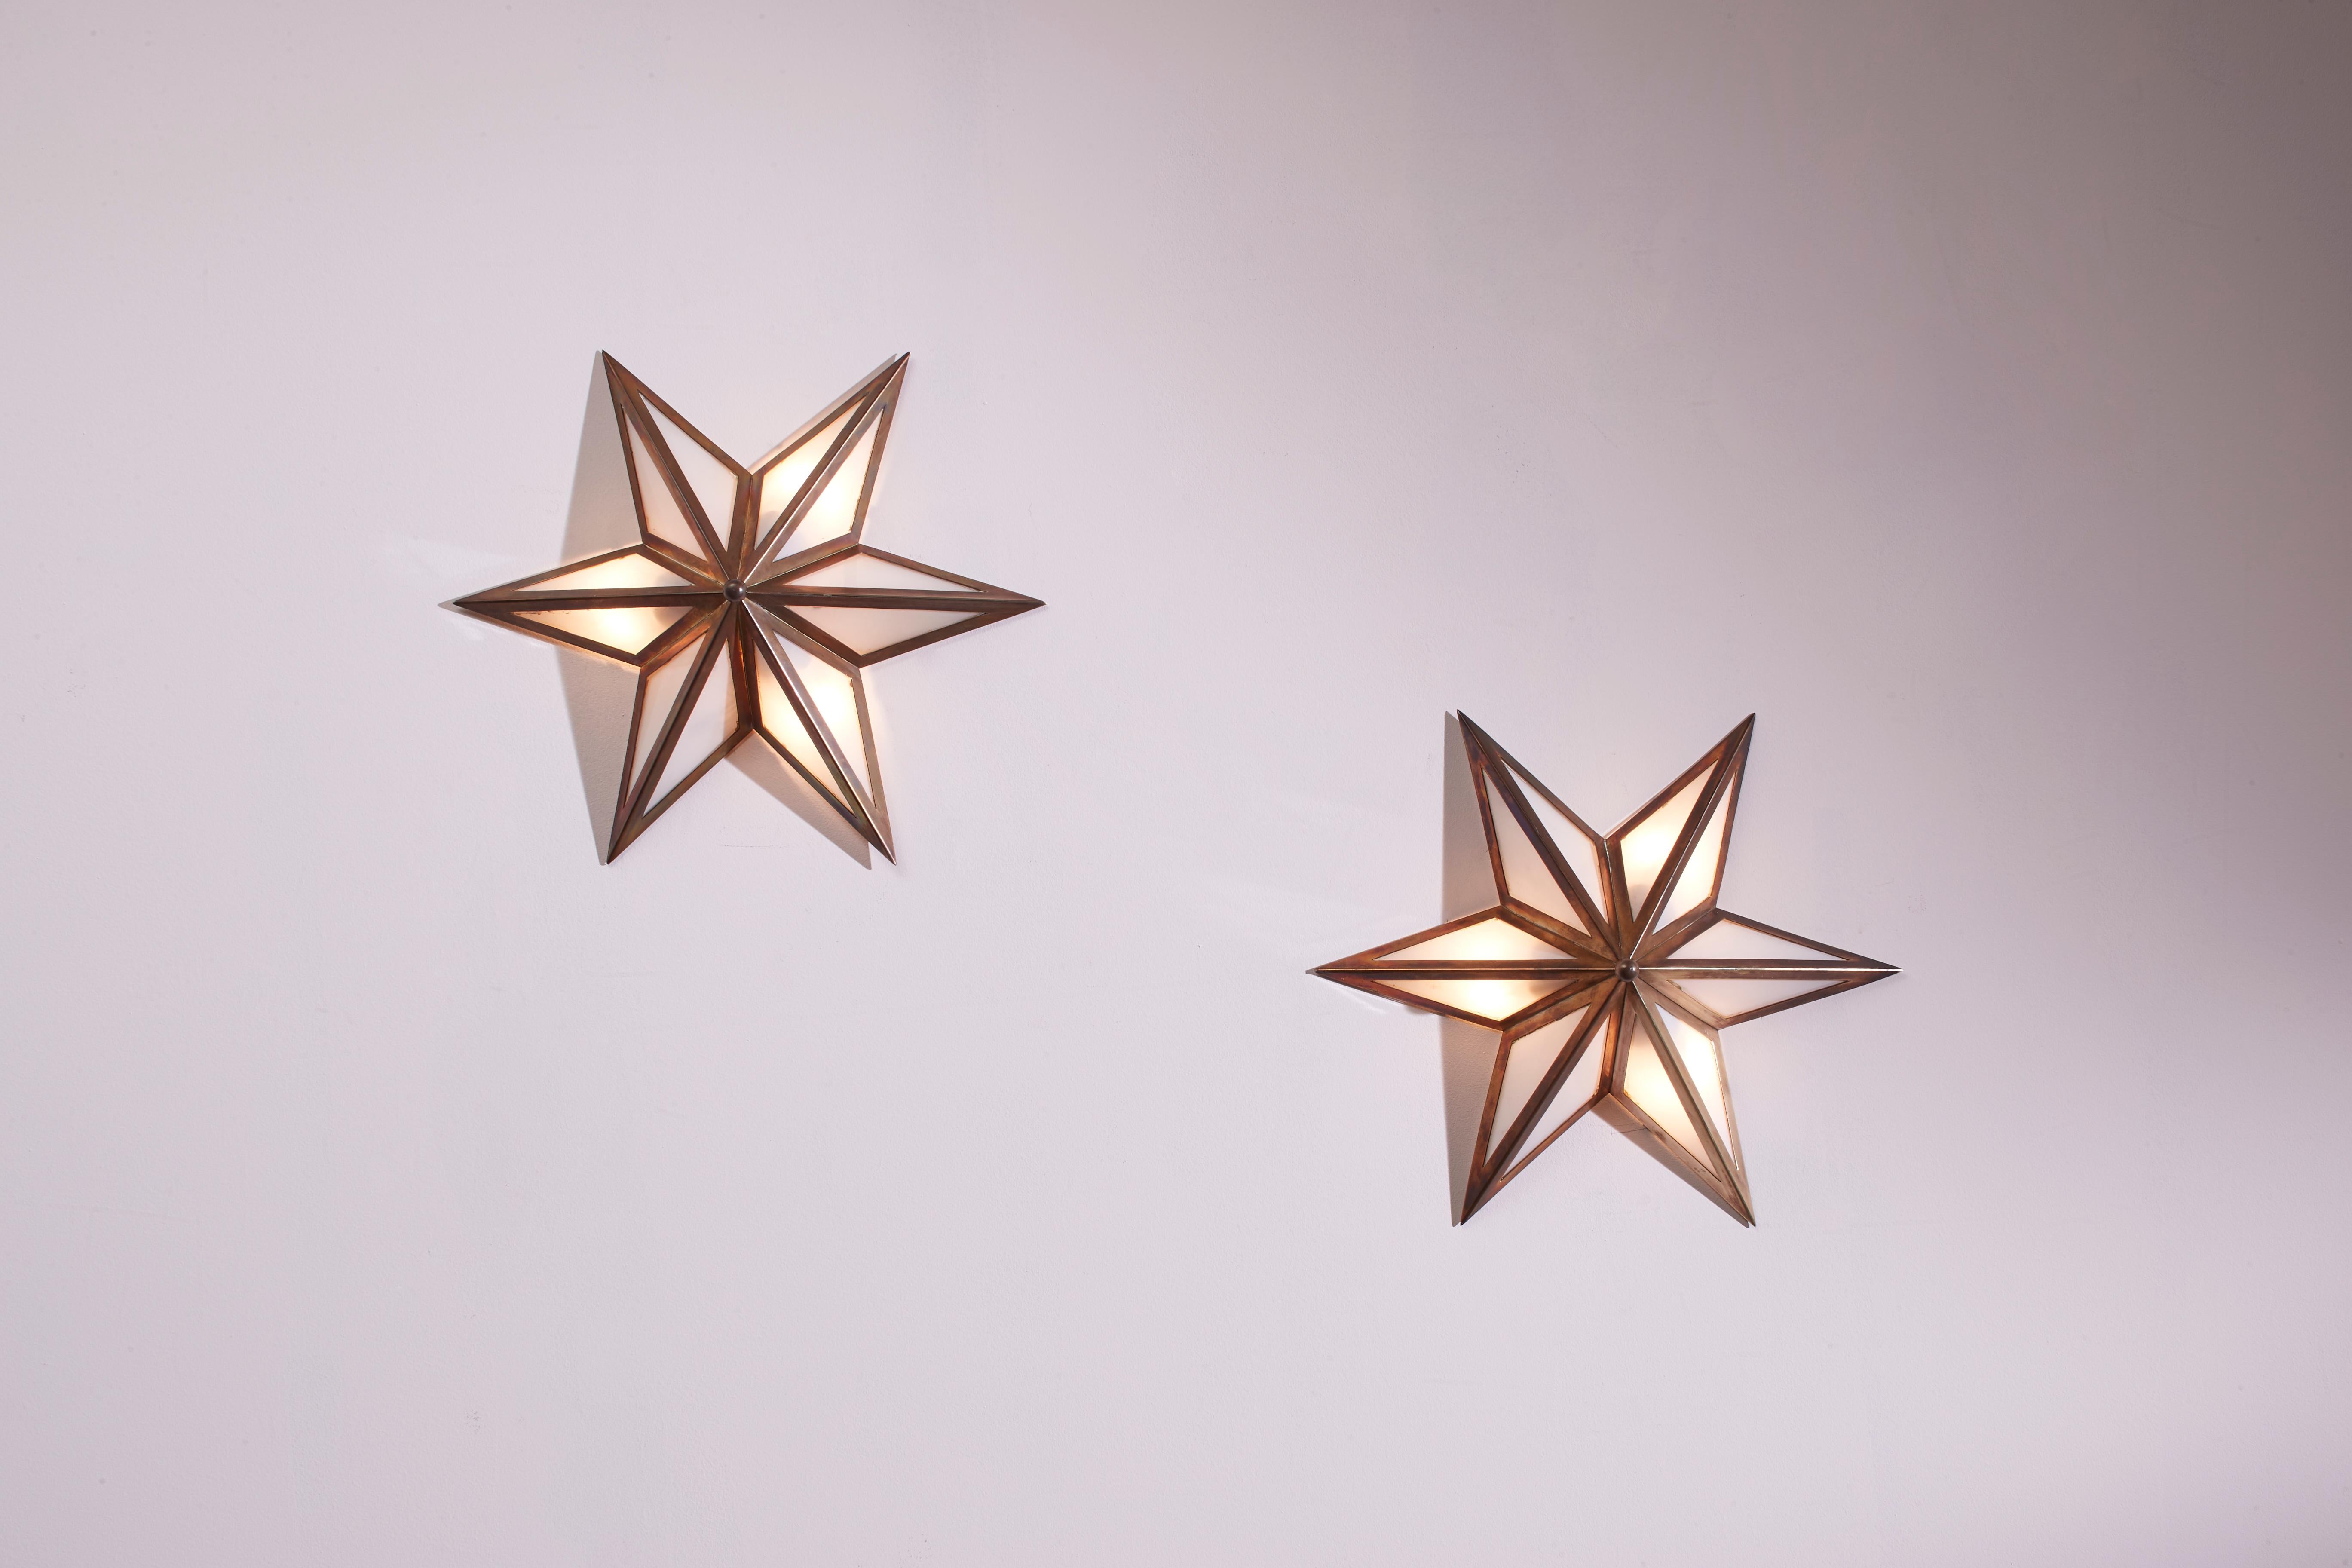 Ein Paar sternförmiger Wandleuchter aus Messing und Glas ist ein authentisches Beispiel für italienische Handwerkskunst aus den sechziger Jahren.

Dünne Messingprofile umrahmen einen Opalglasdiffusor und formen einen leuchtenden Stern. Dieses Set